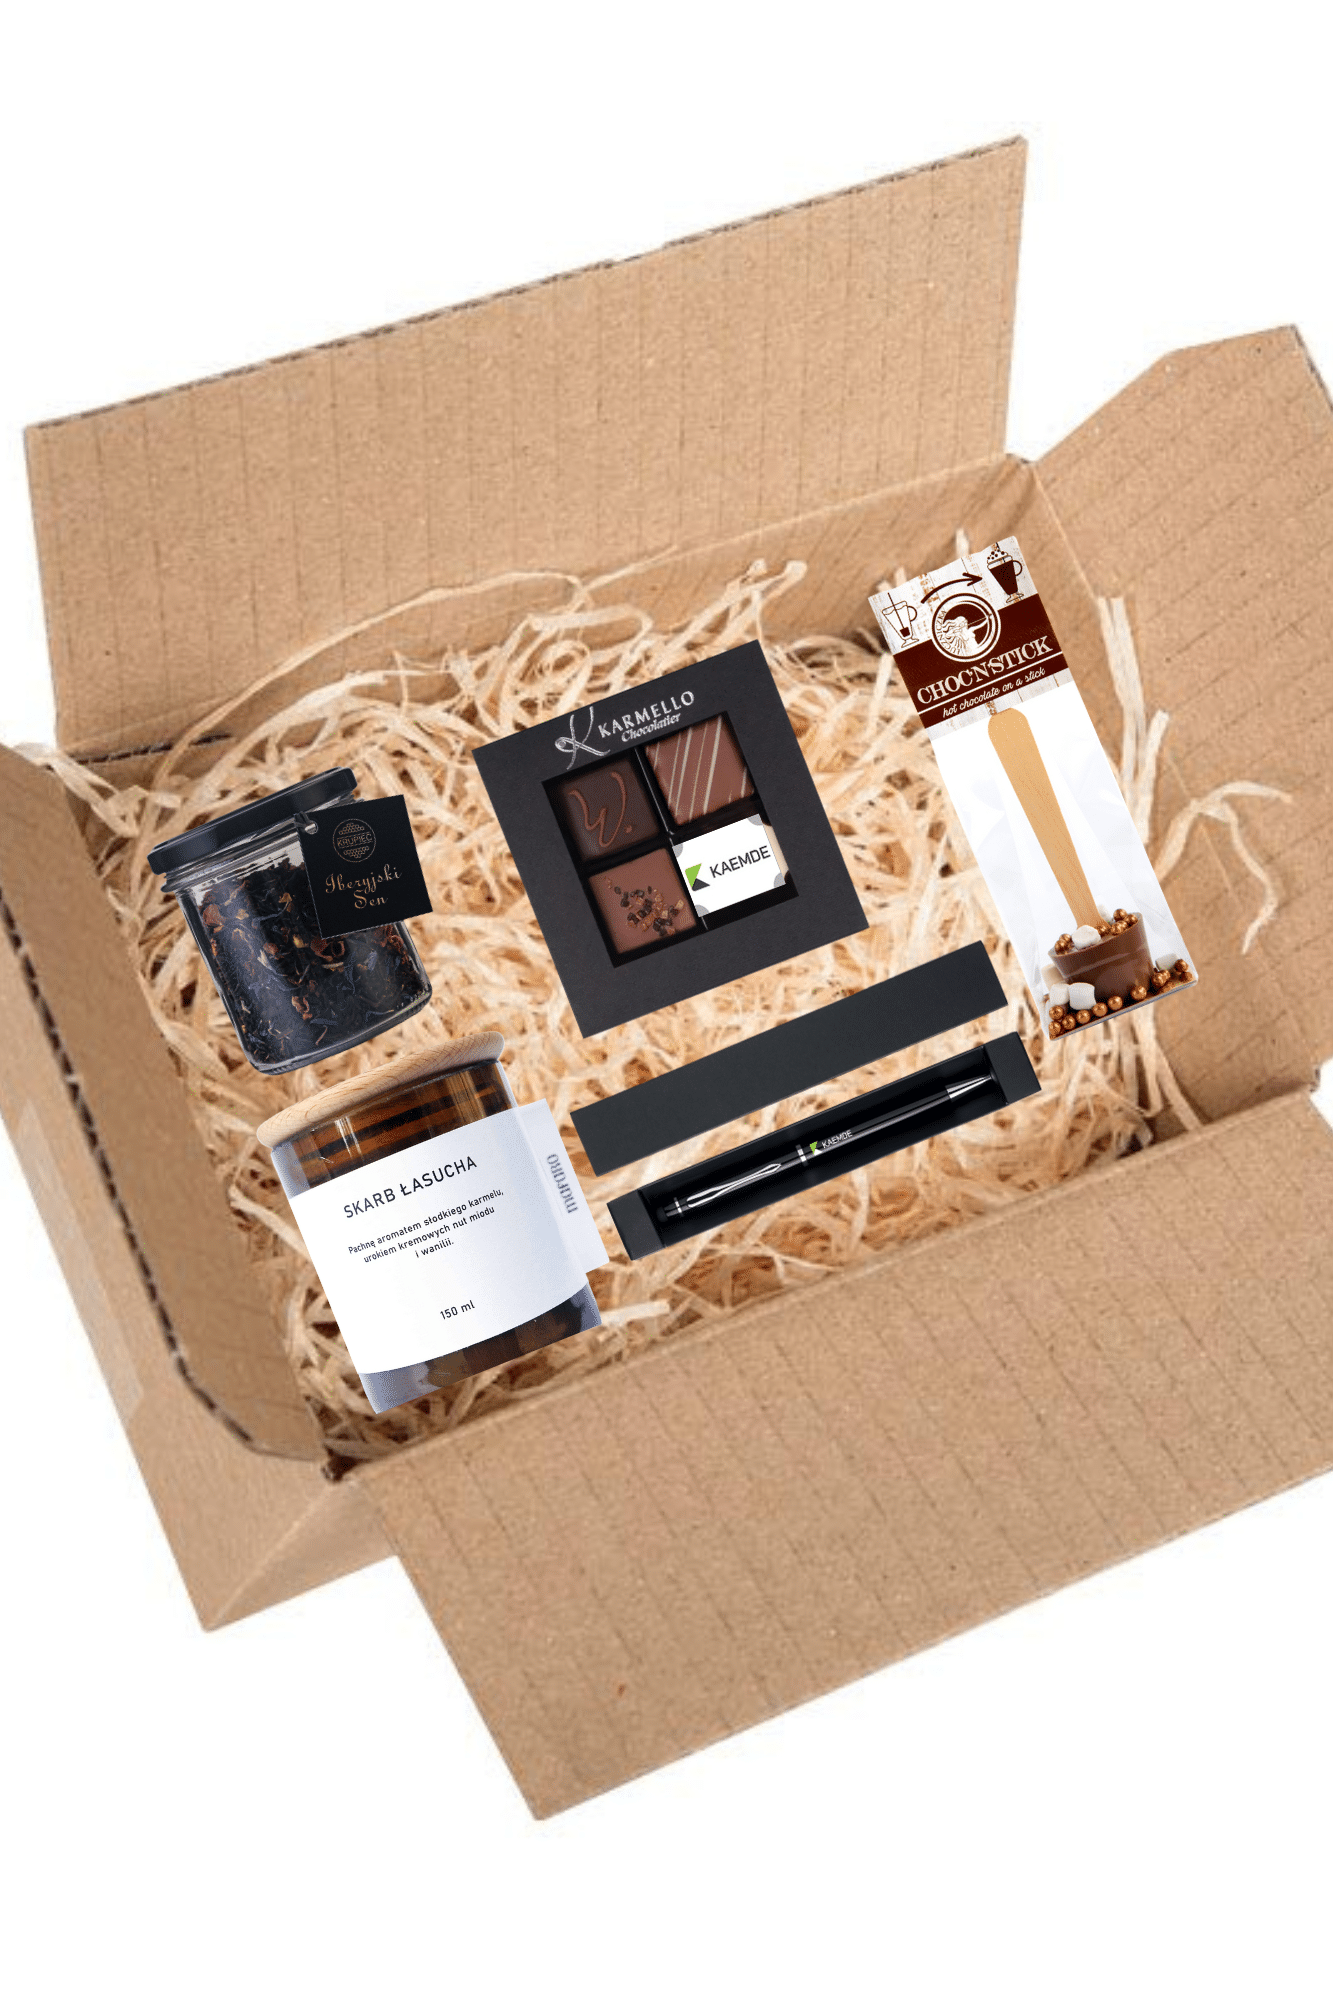 Otwarte kartonowe pudełko upominkowe wypełnione asortymentem tabliczek czekolady i małym słoiczkiem, ustawione na łóżku z dekoracyjnej słomy.